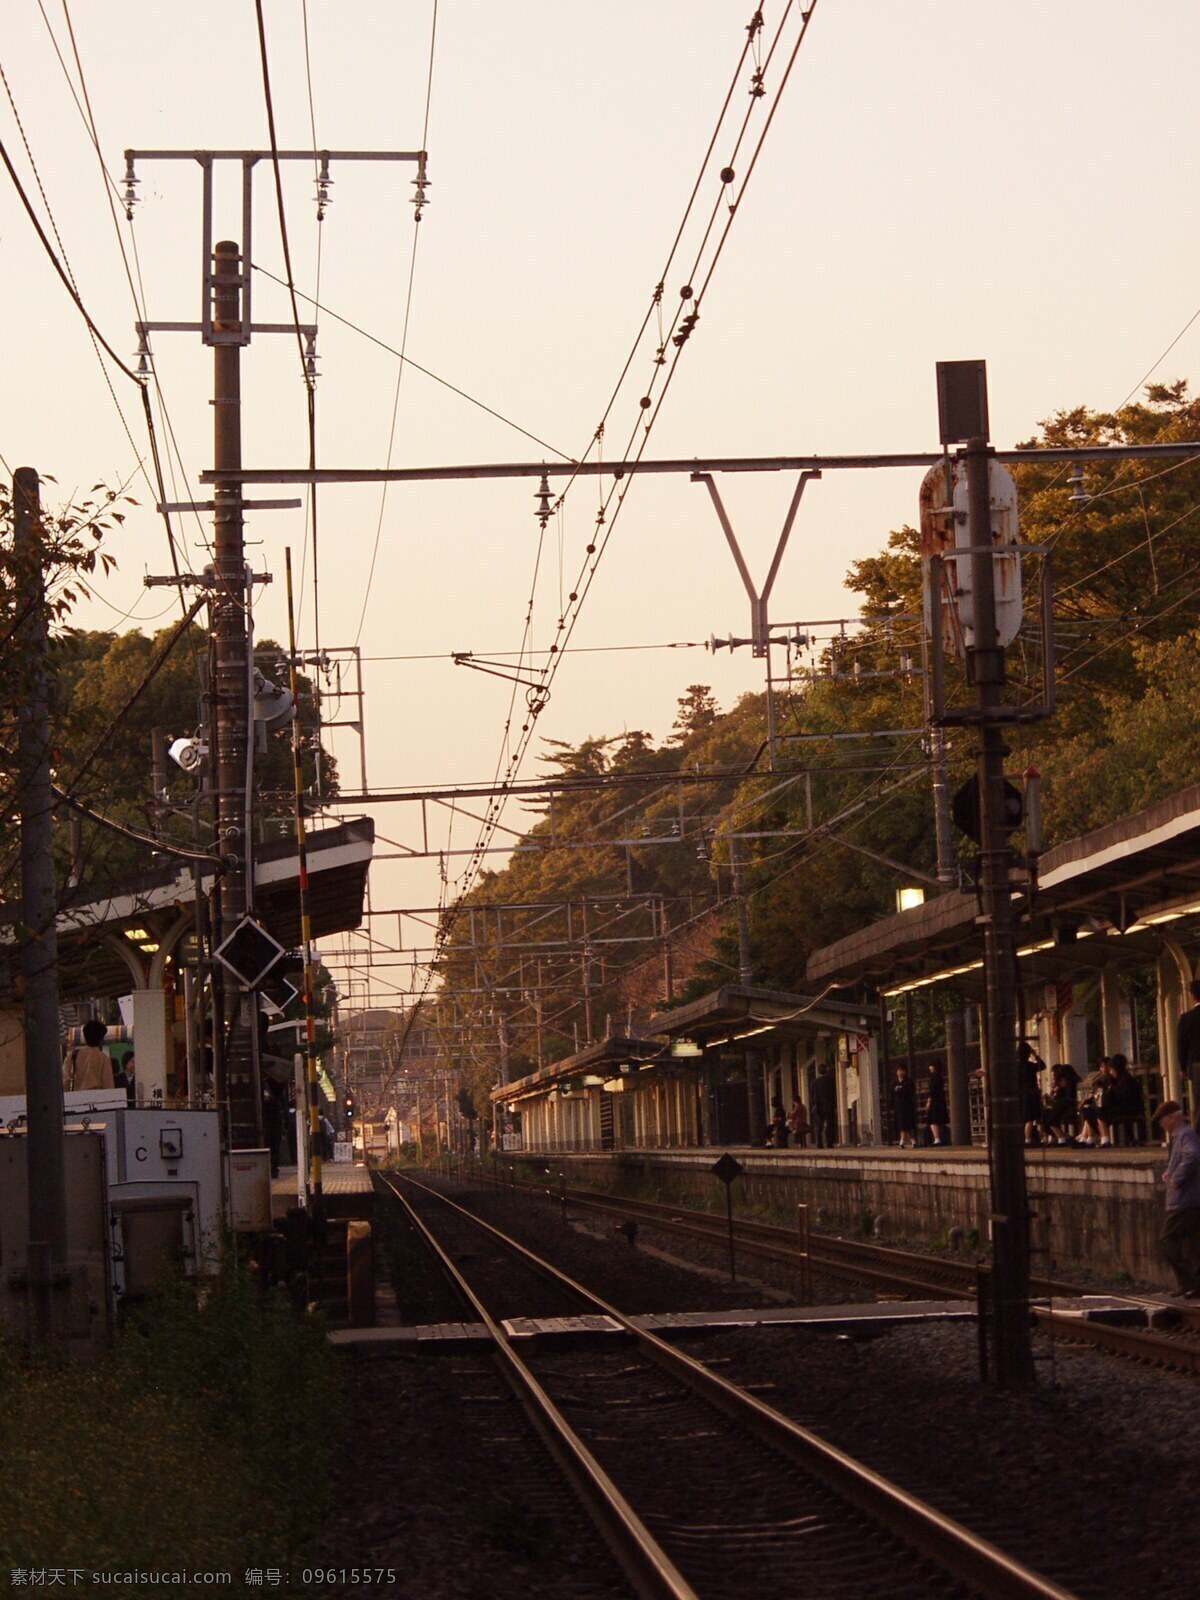 火车站台 铁轨 电线杆 树木 乘客 人物 怀旧 天空 其他图片 自然景观 自然风景